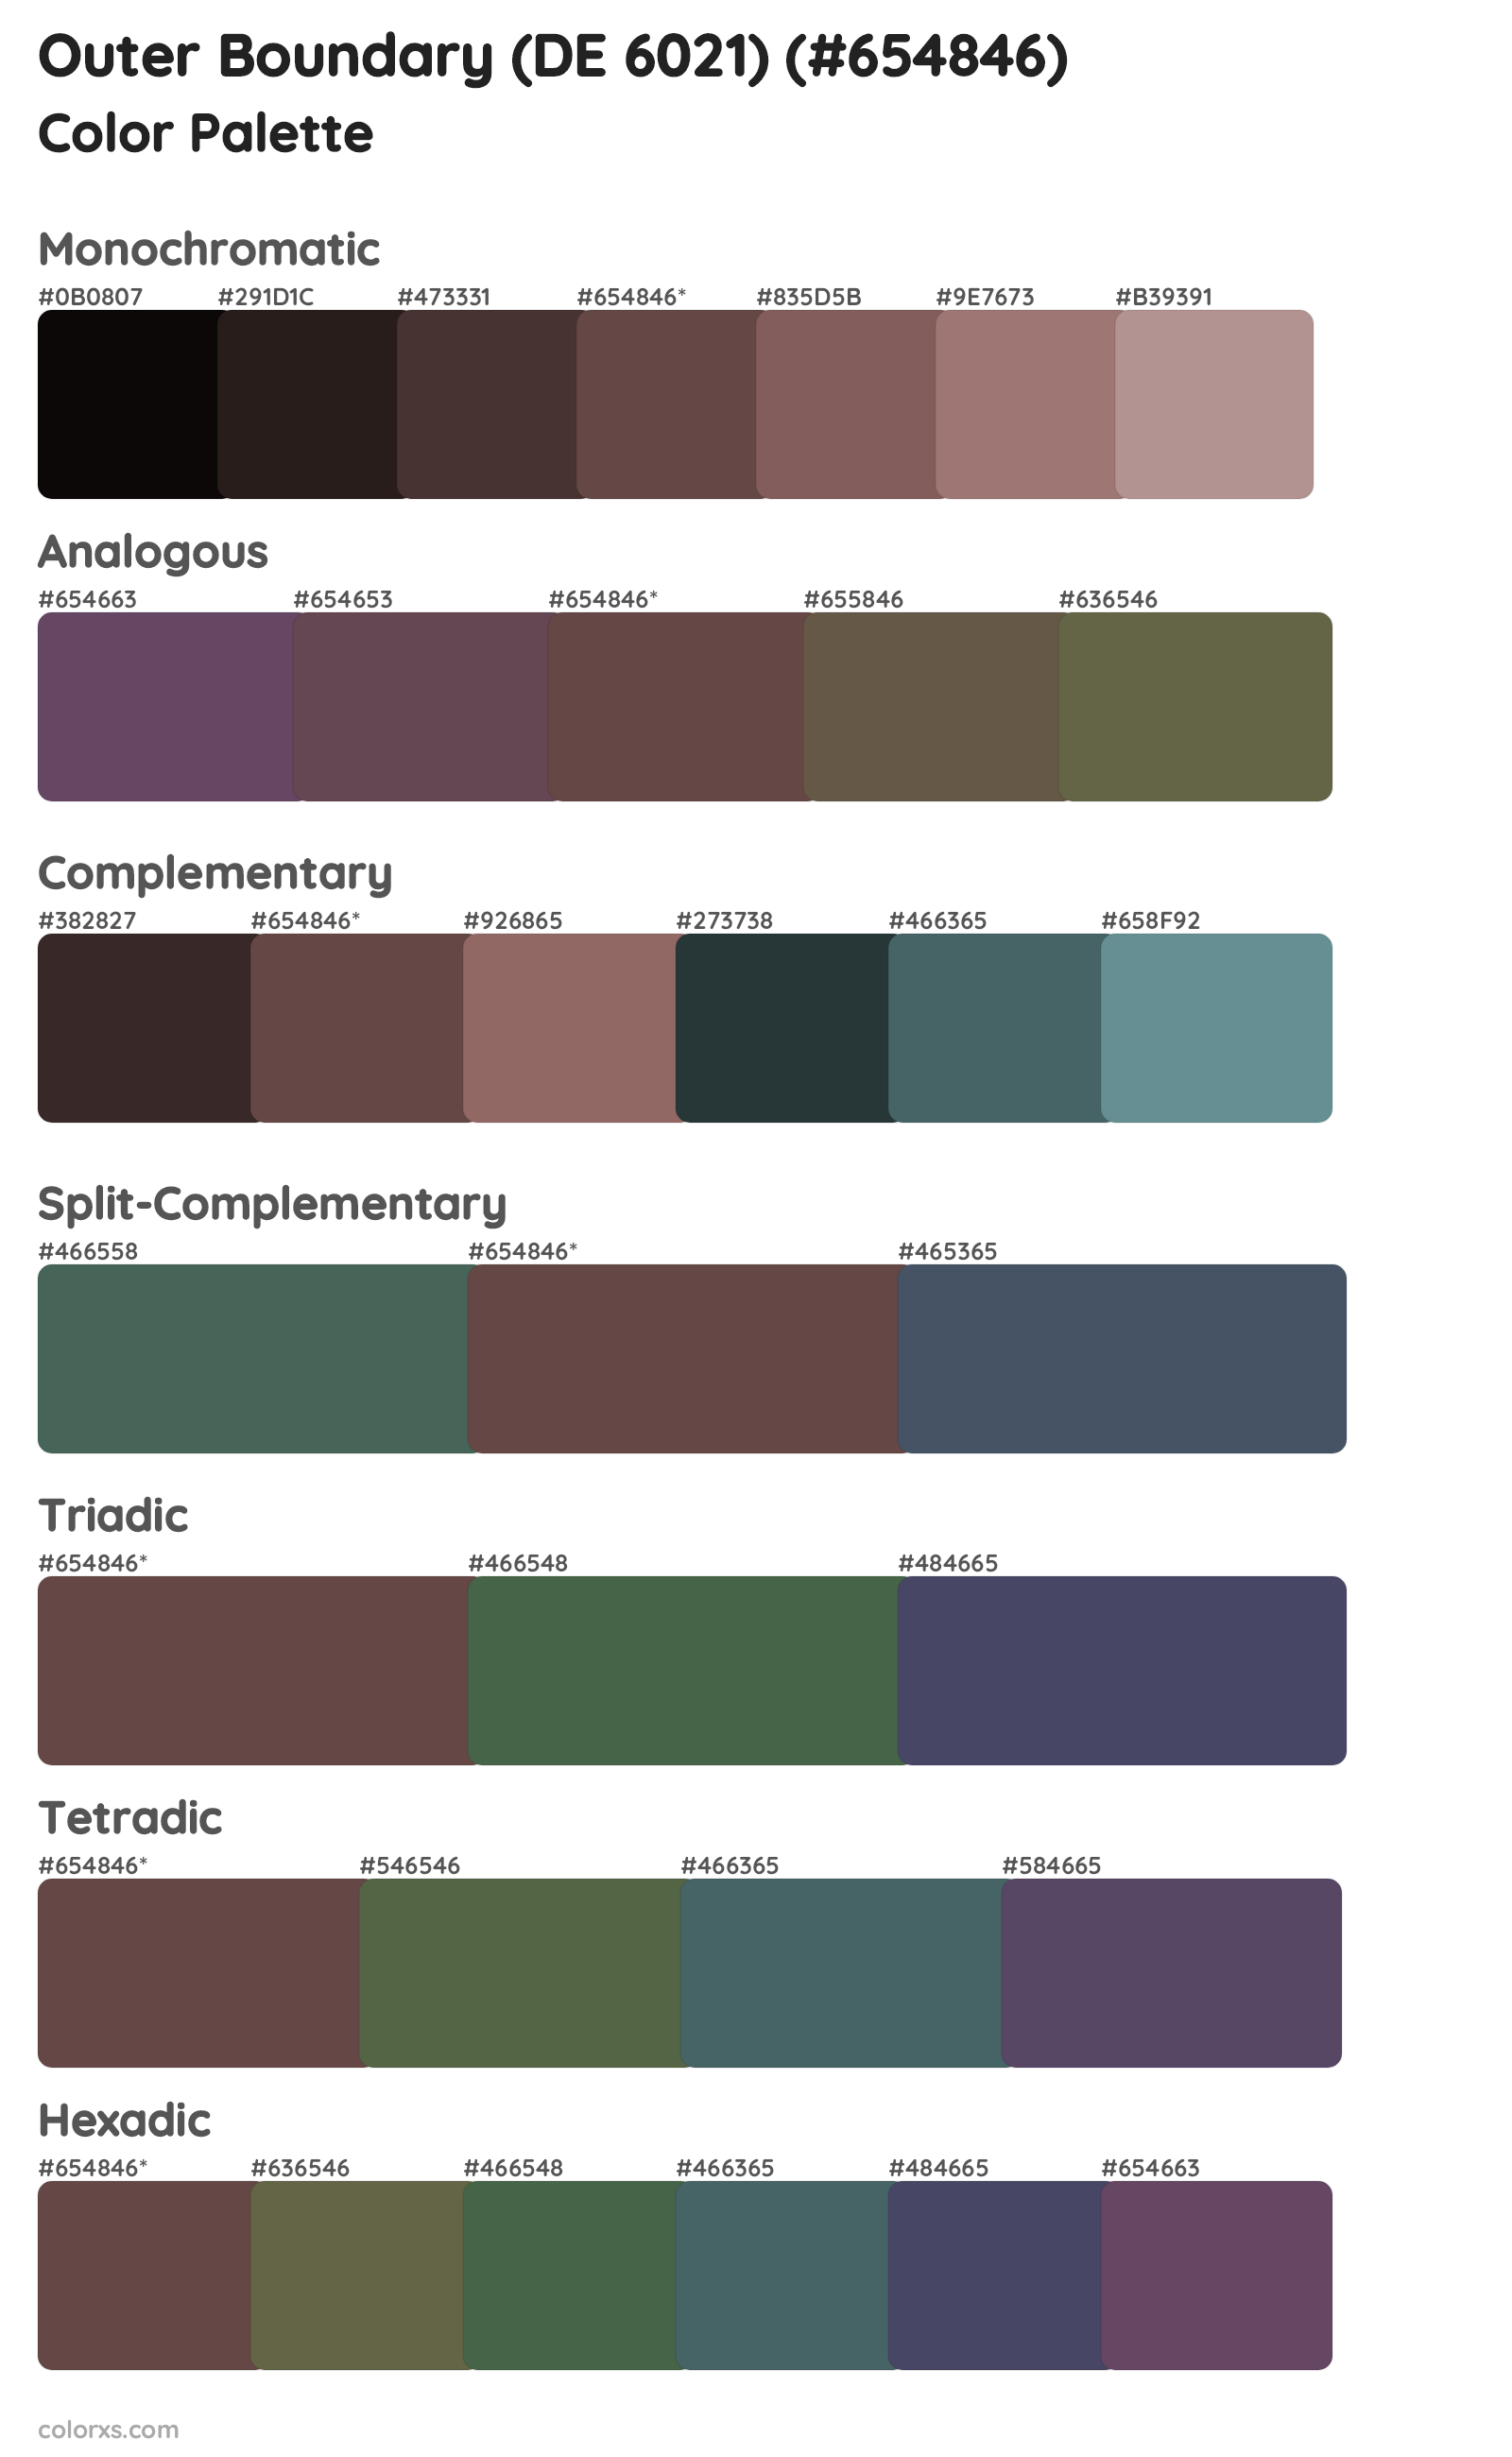 Outer Boundary (DE 6021) Color Scheme Palettes